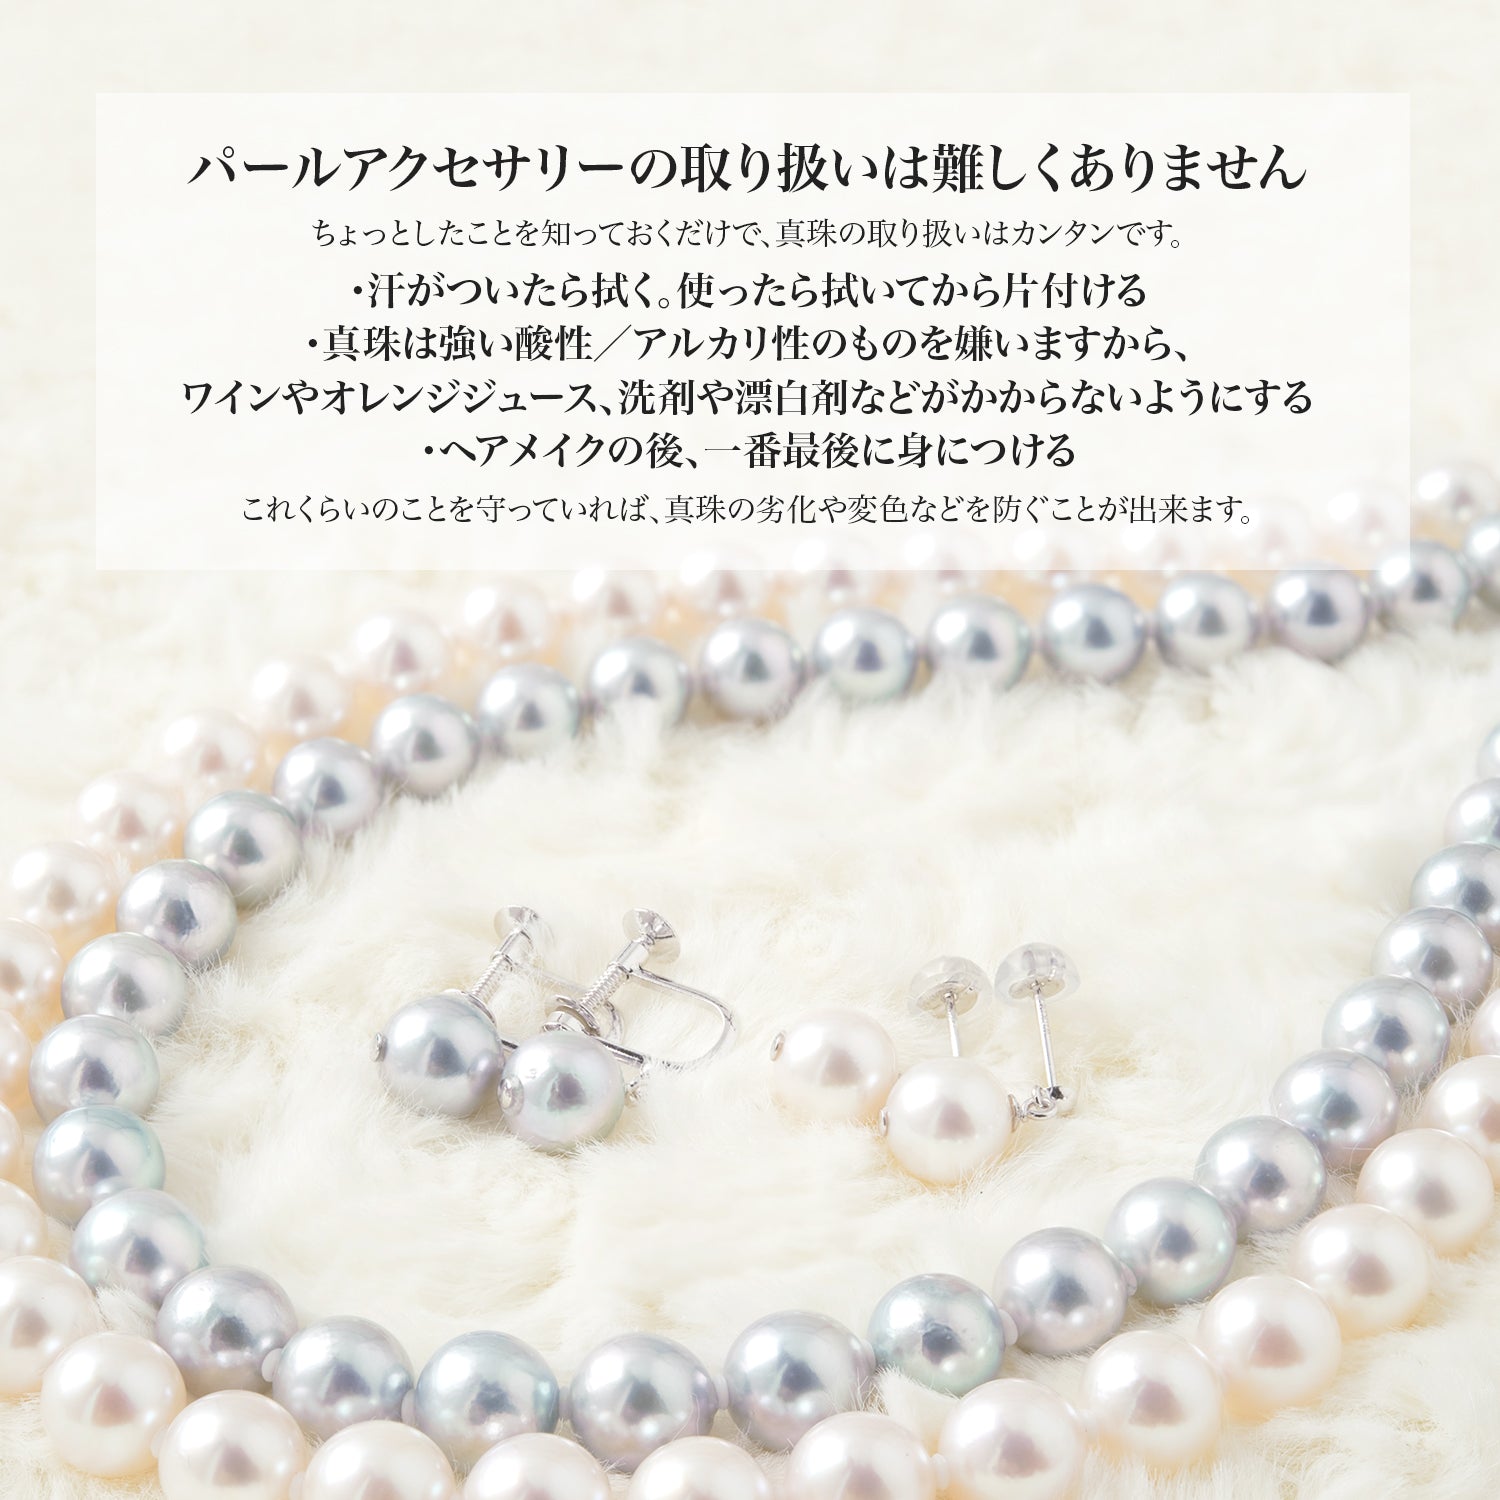 [花玉认证珍珠] 正装项链 2 件装 [8.5-9.0 毫米]（含耳环）Akoya 珍珠带收纳盒 [新日本珍珠研究所真品证书]